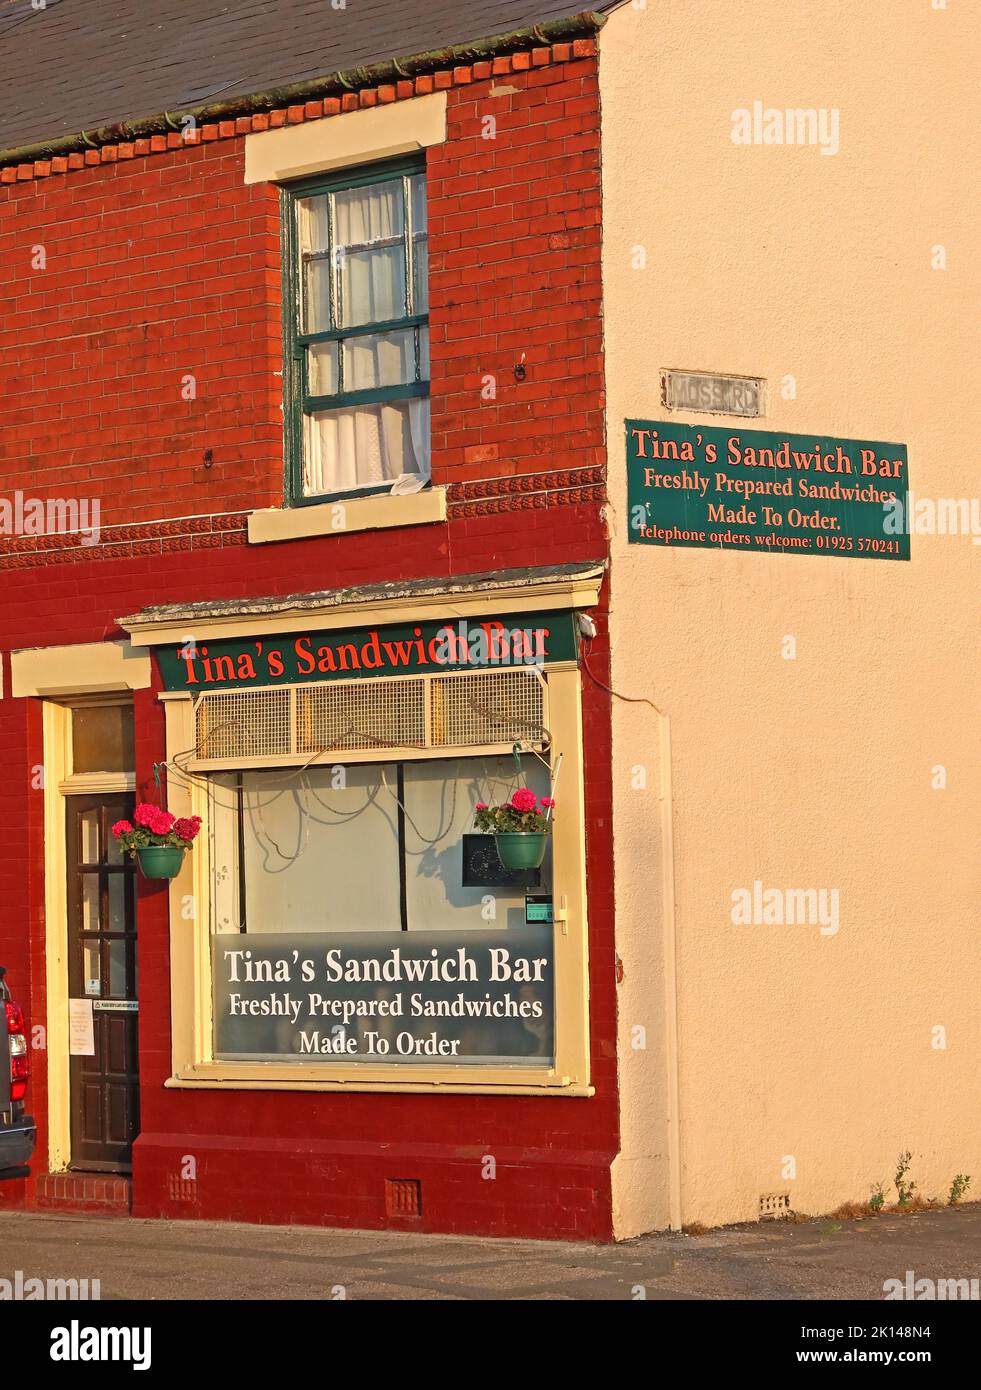 Pequeño negocio de sándwiches independiente, bar de sándwiches Tinas, Thelwall Lane, Latchford, Warrington, Cheshire, Inglaterra, Reino Unido, WA4 1ND Foto de stock